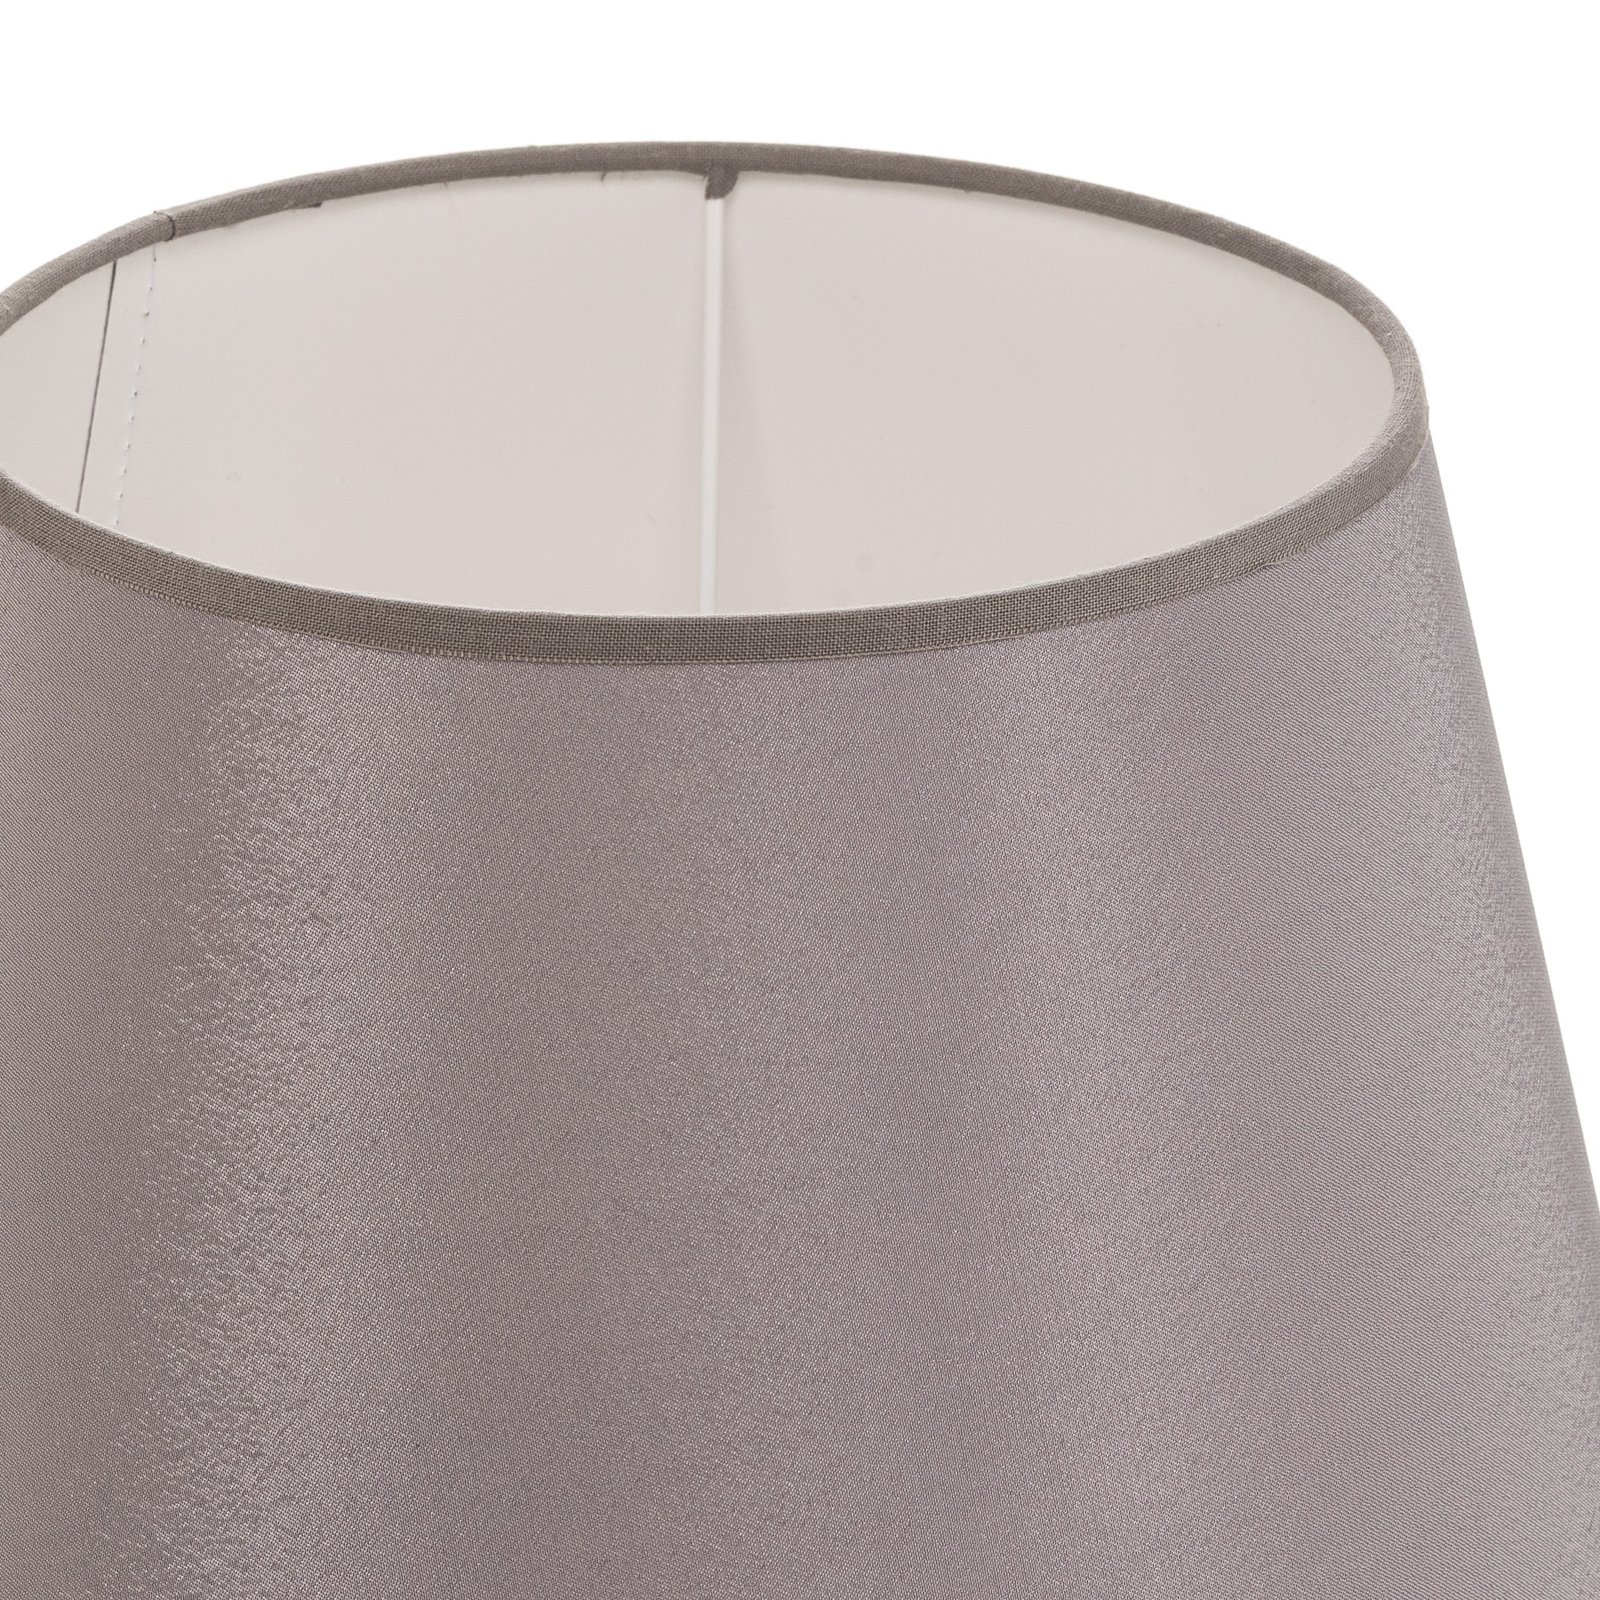 Cone lampshade height 18 cm, grey/white chintz